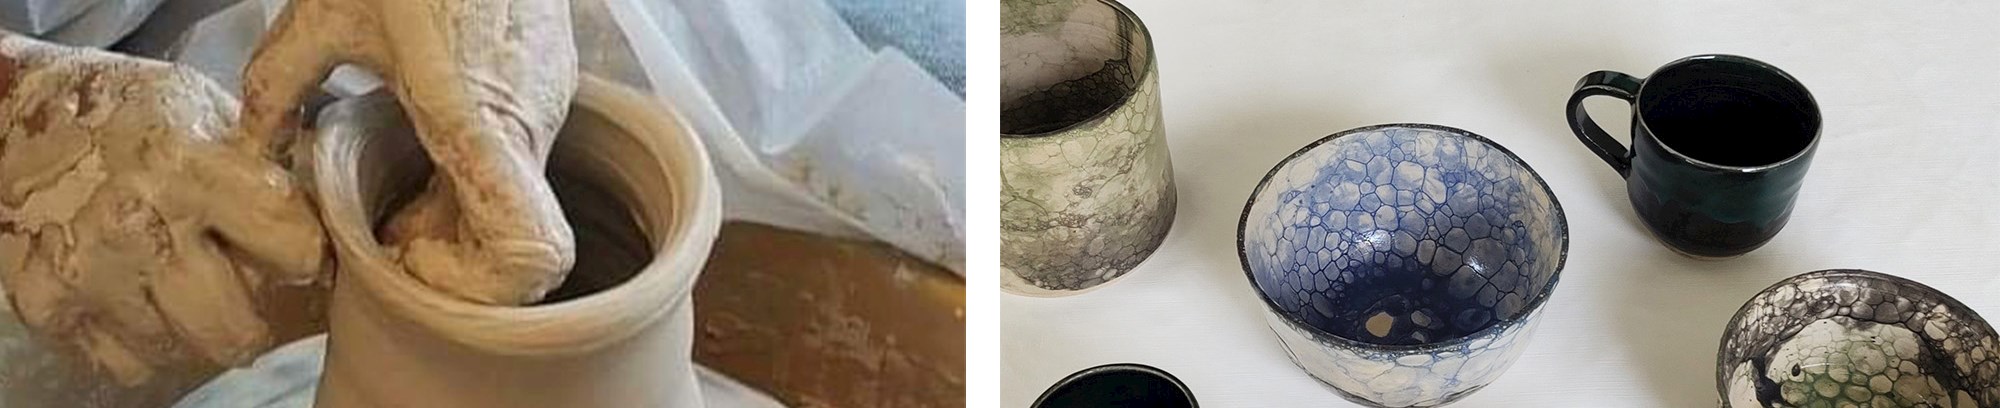 2 fotos fra Anette Filtenborgs keramikværksted i Tvede ved Randers. Keramik drejes til en vase og færdige værker, krus og skåle står på et bord.